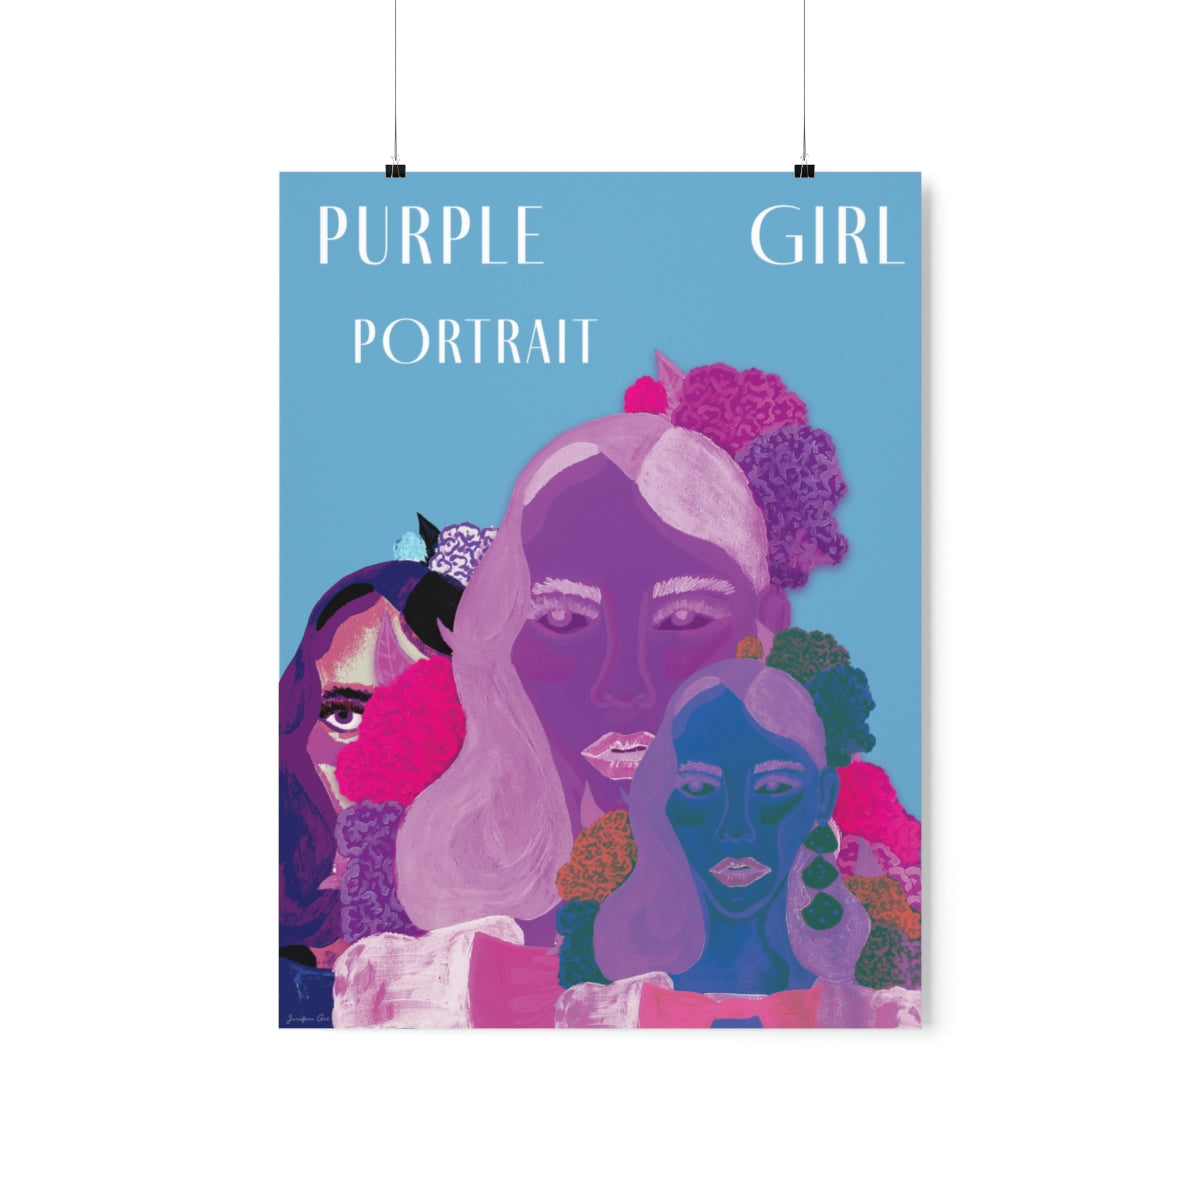 Archival Posters: The Purple Girl Portrait - Pop Art Version